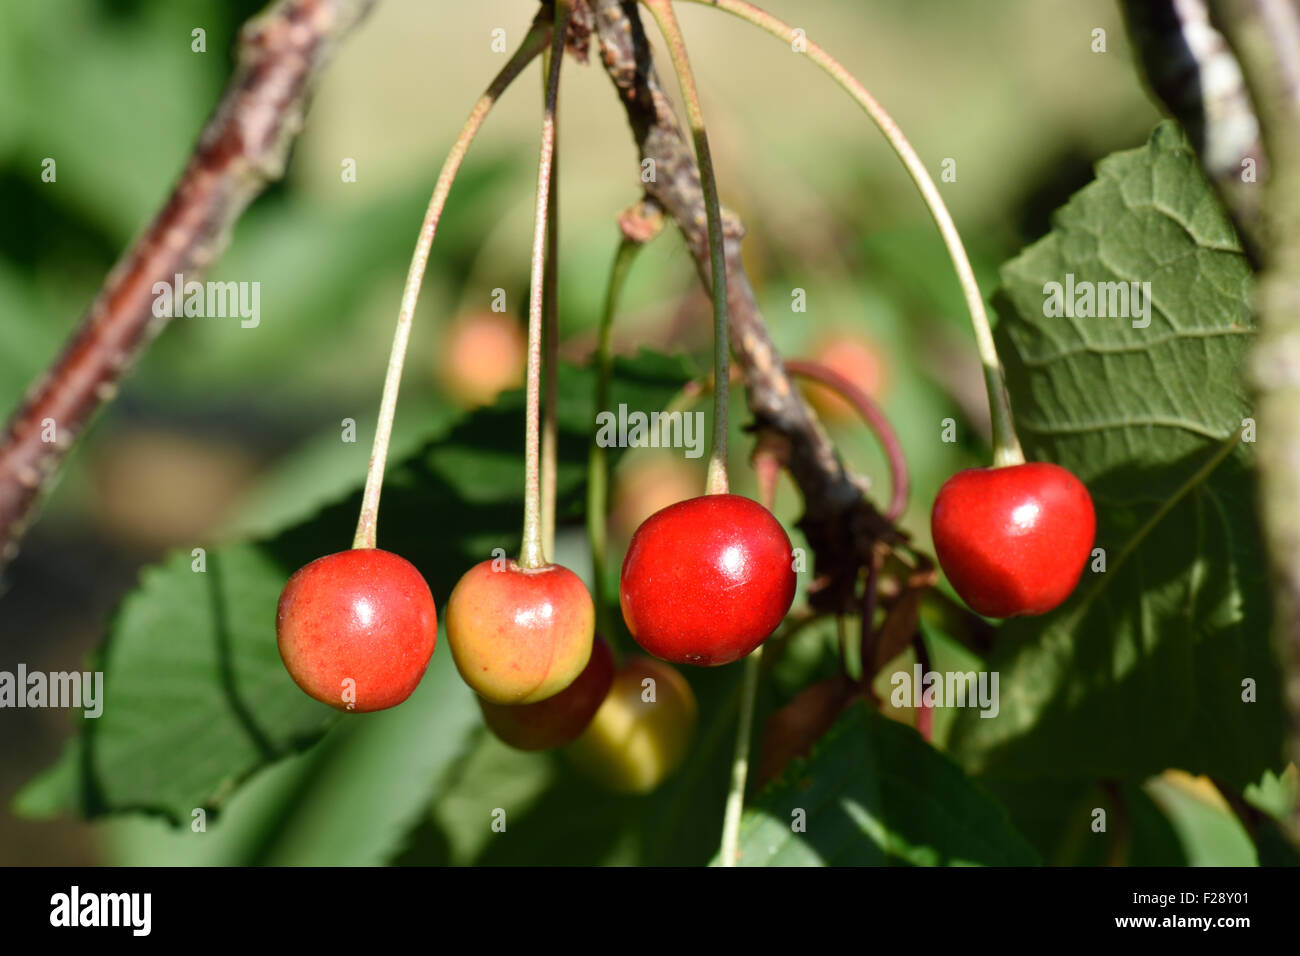 Reife Früchte auf einem Wild oder Vogel Kirschbaum, Prunus Avium, in ein fruchtbares Jahr, Berkshire, Juli Stockfoto